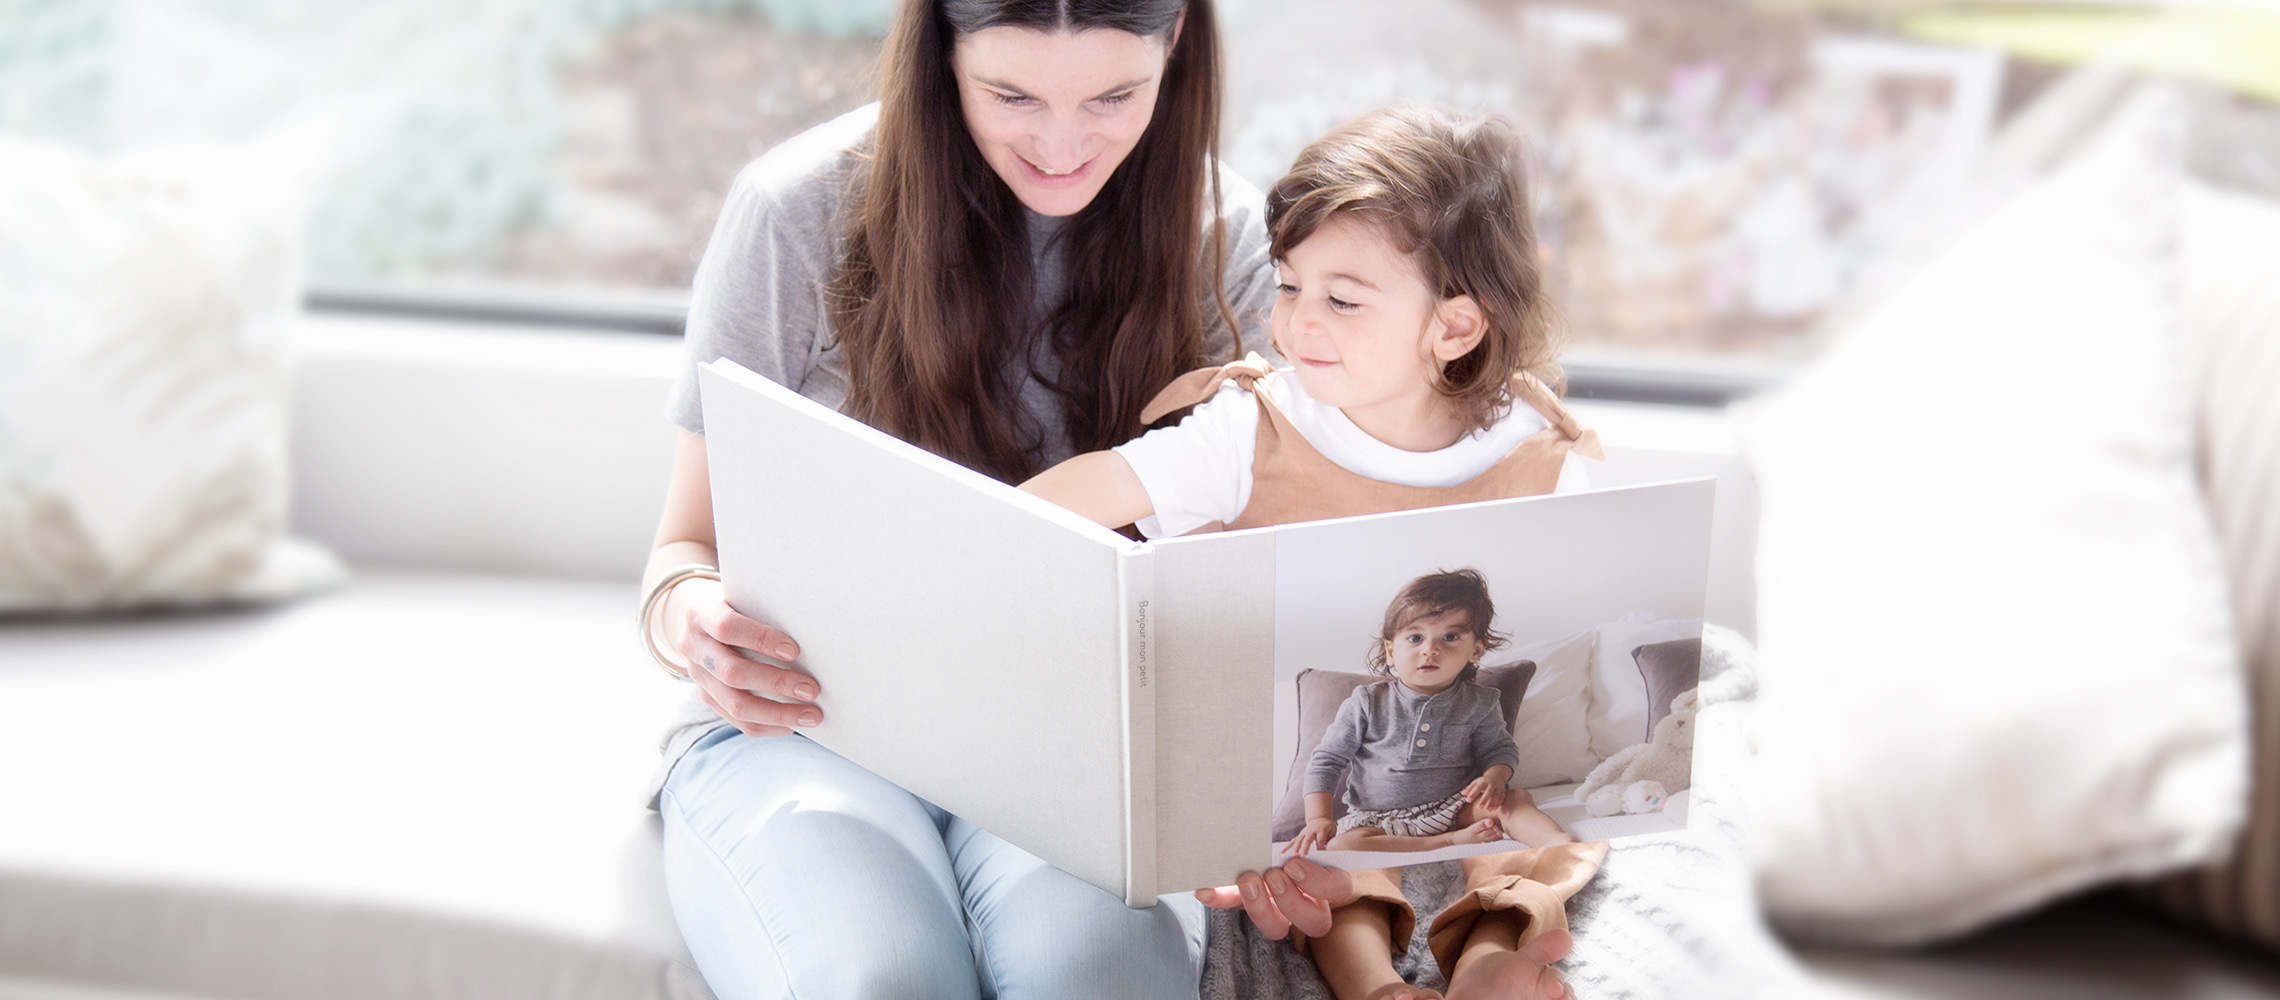 Femme et enfant regardant le livre photo pour bébé de son enfant.